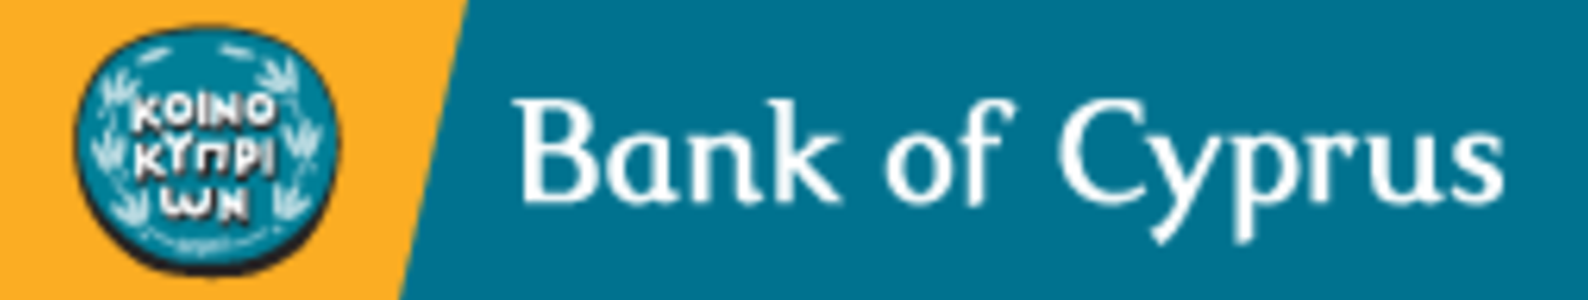 Der bank. Банк Кипра. Банк Сайпрус лого. Банки Кипра логотипы. Bank of Cyprus 1 Bank.